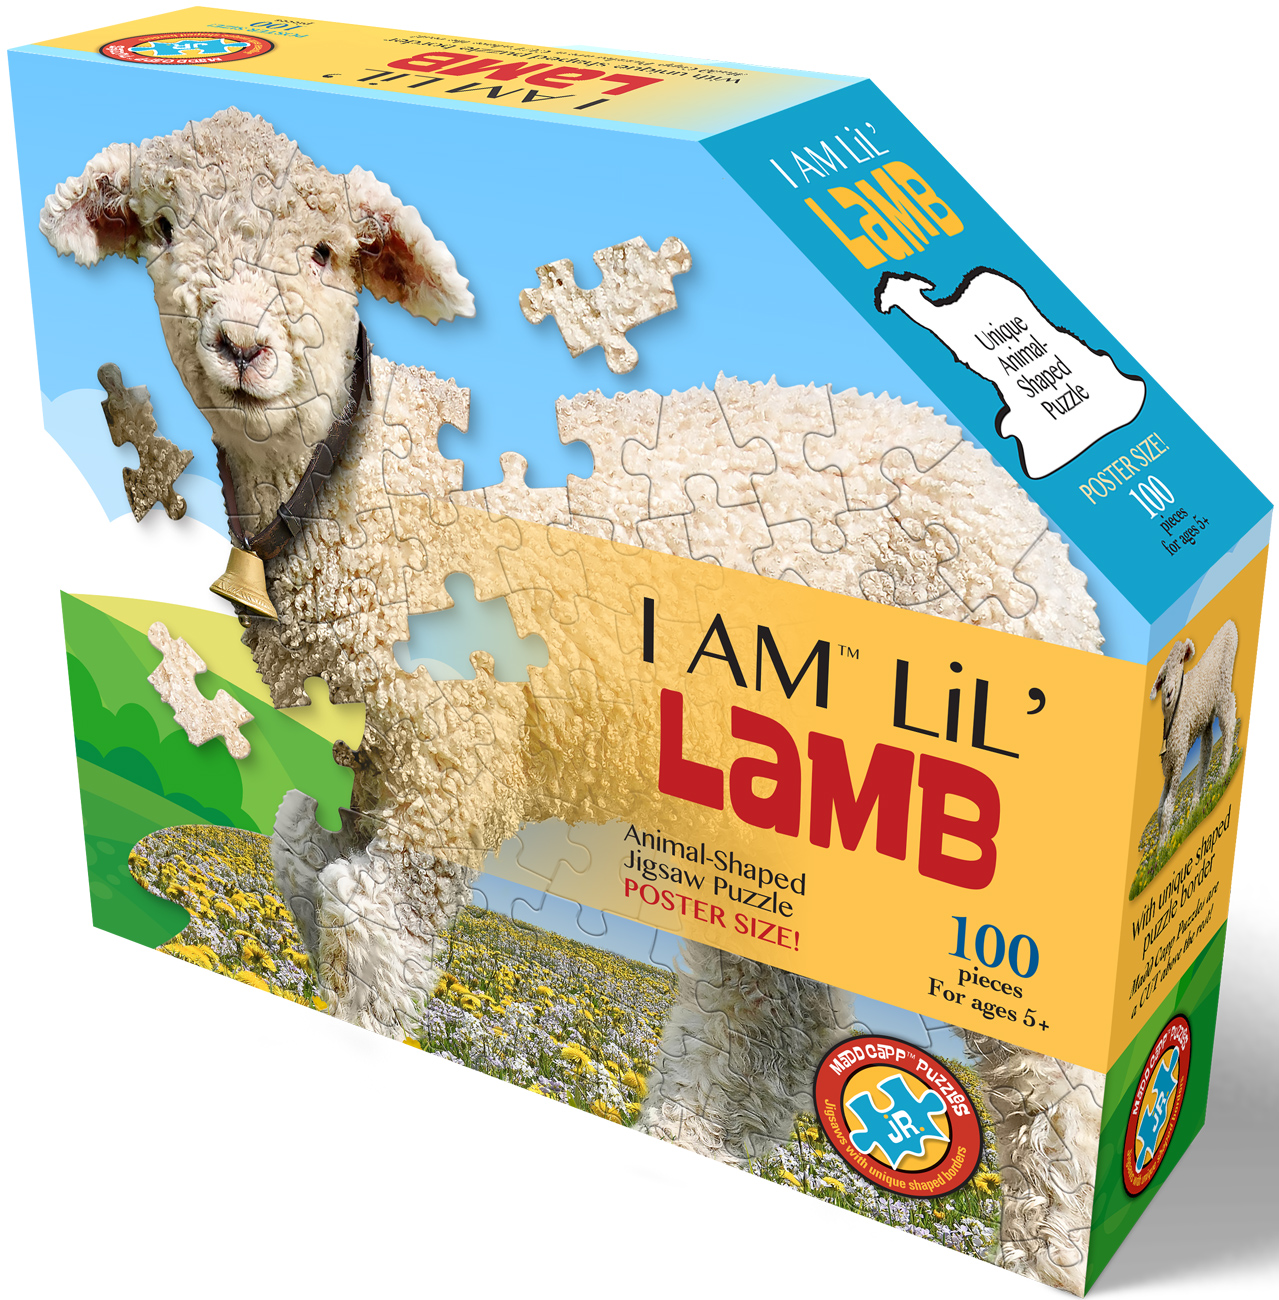 I Am Lil' Lamb